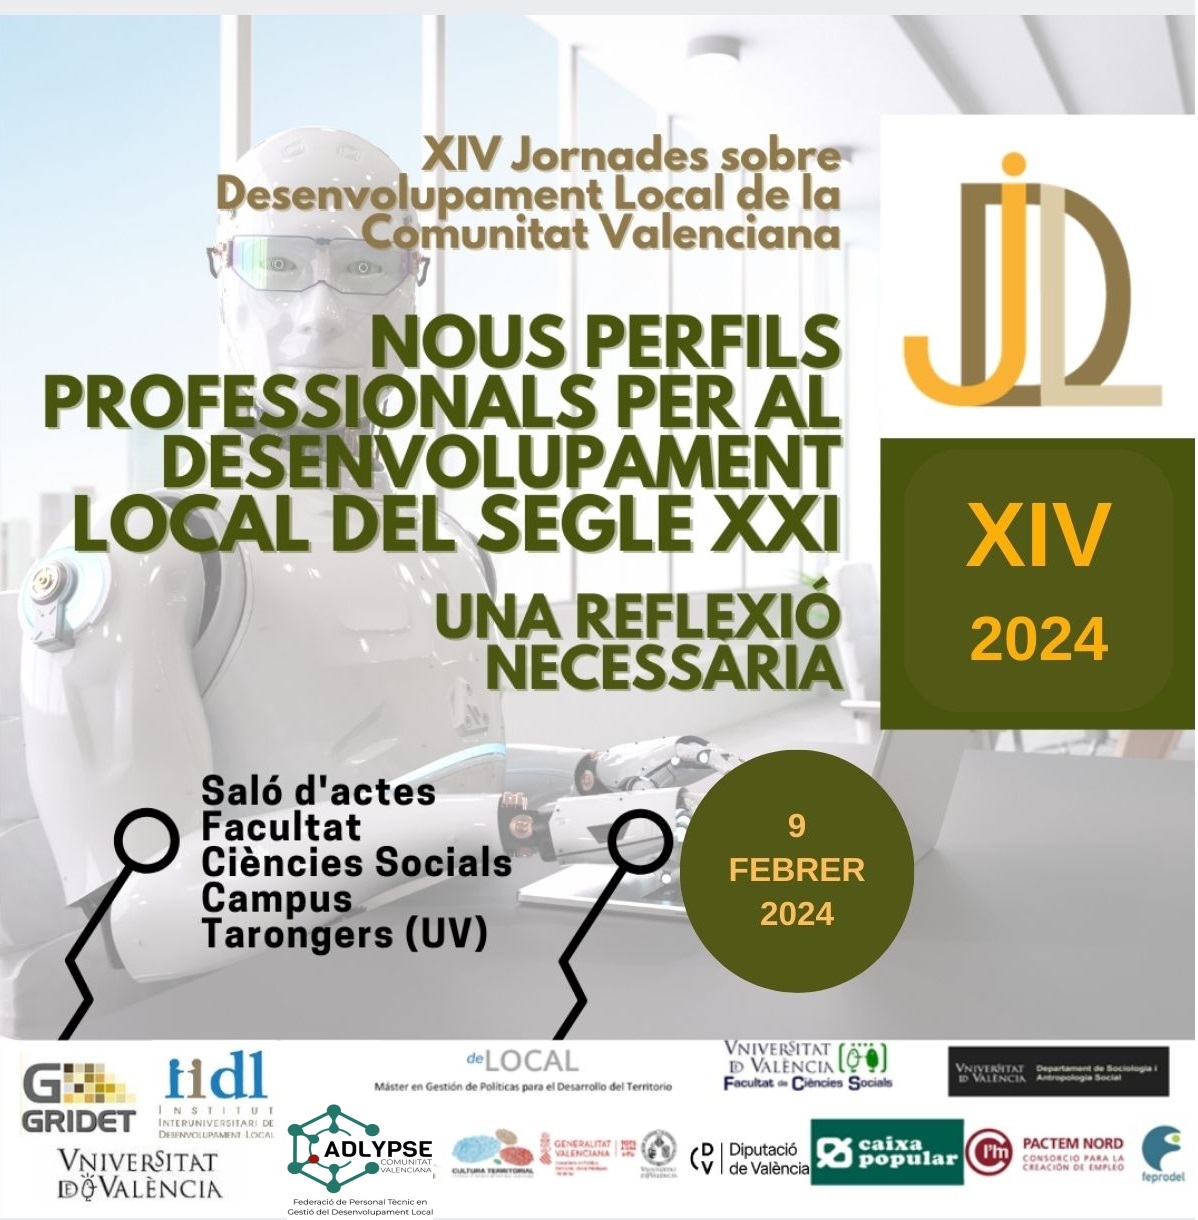 XIV Jornadas sobre desarrollo Local de la Comunidad Valenciana